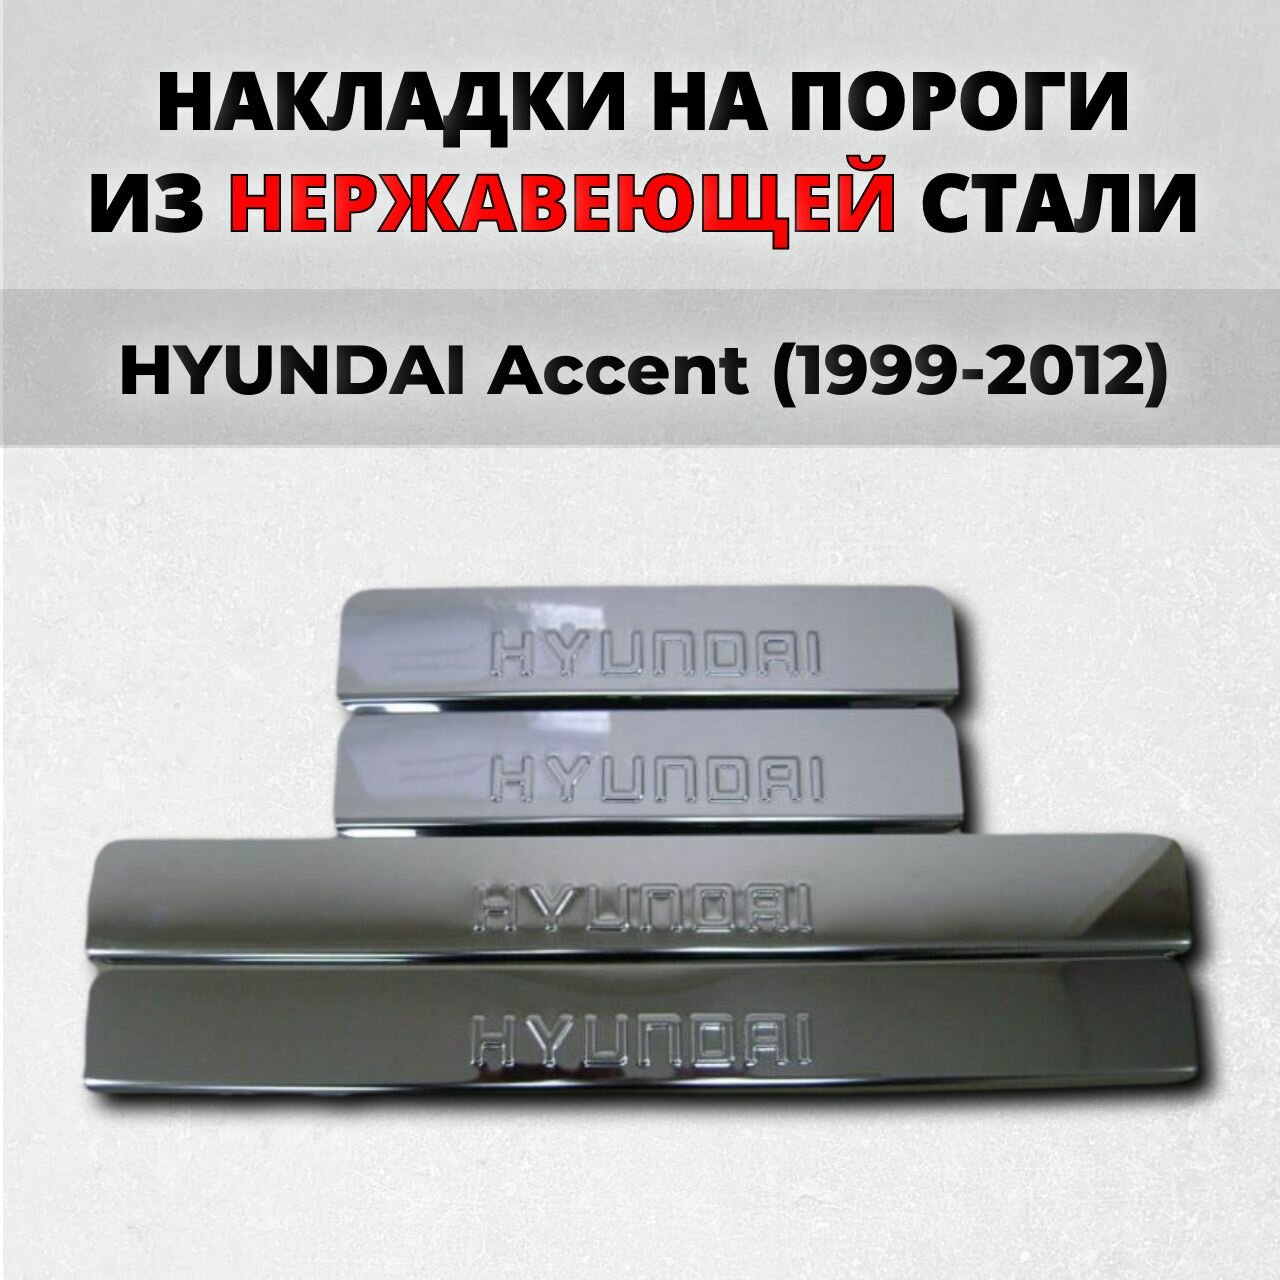 Накладки на пороги Хендай Акцент 1999-2012 из нержавеющей стали HYUNDAI Accent